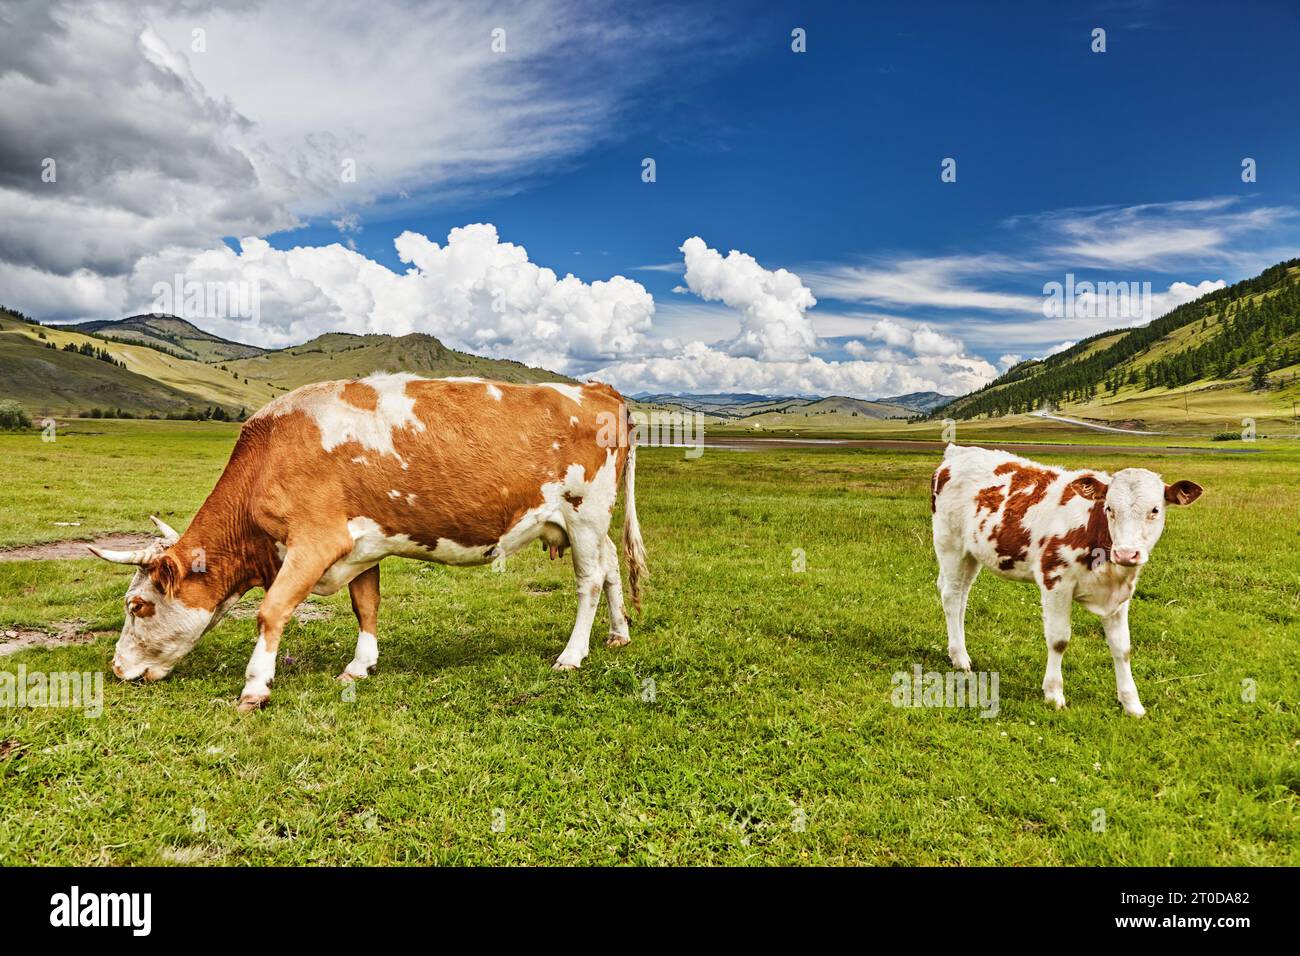 Paysage pastoral avec des vaches de pâturage dans une vallée de montagne Banque D'Images